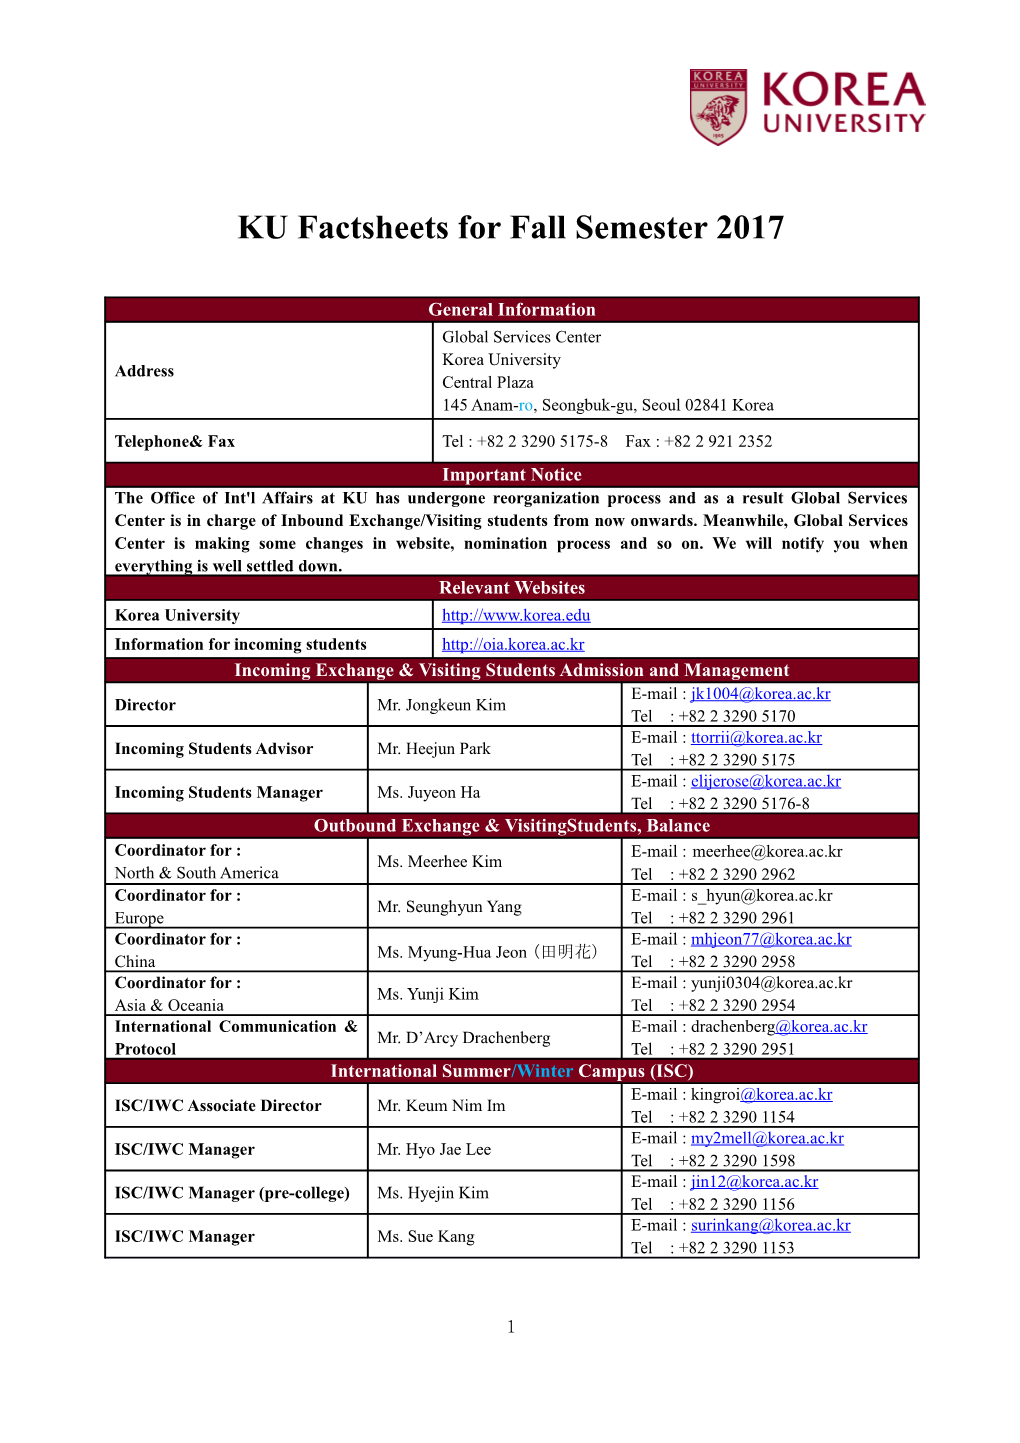 KU Factsheets Forfall Semester 2017